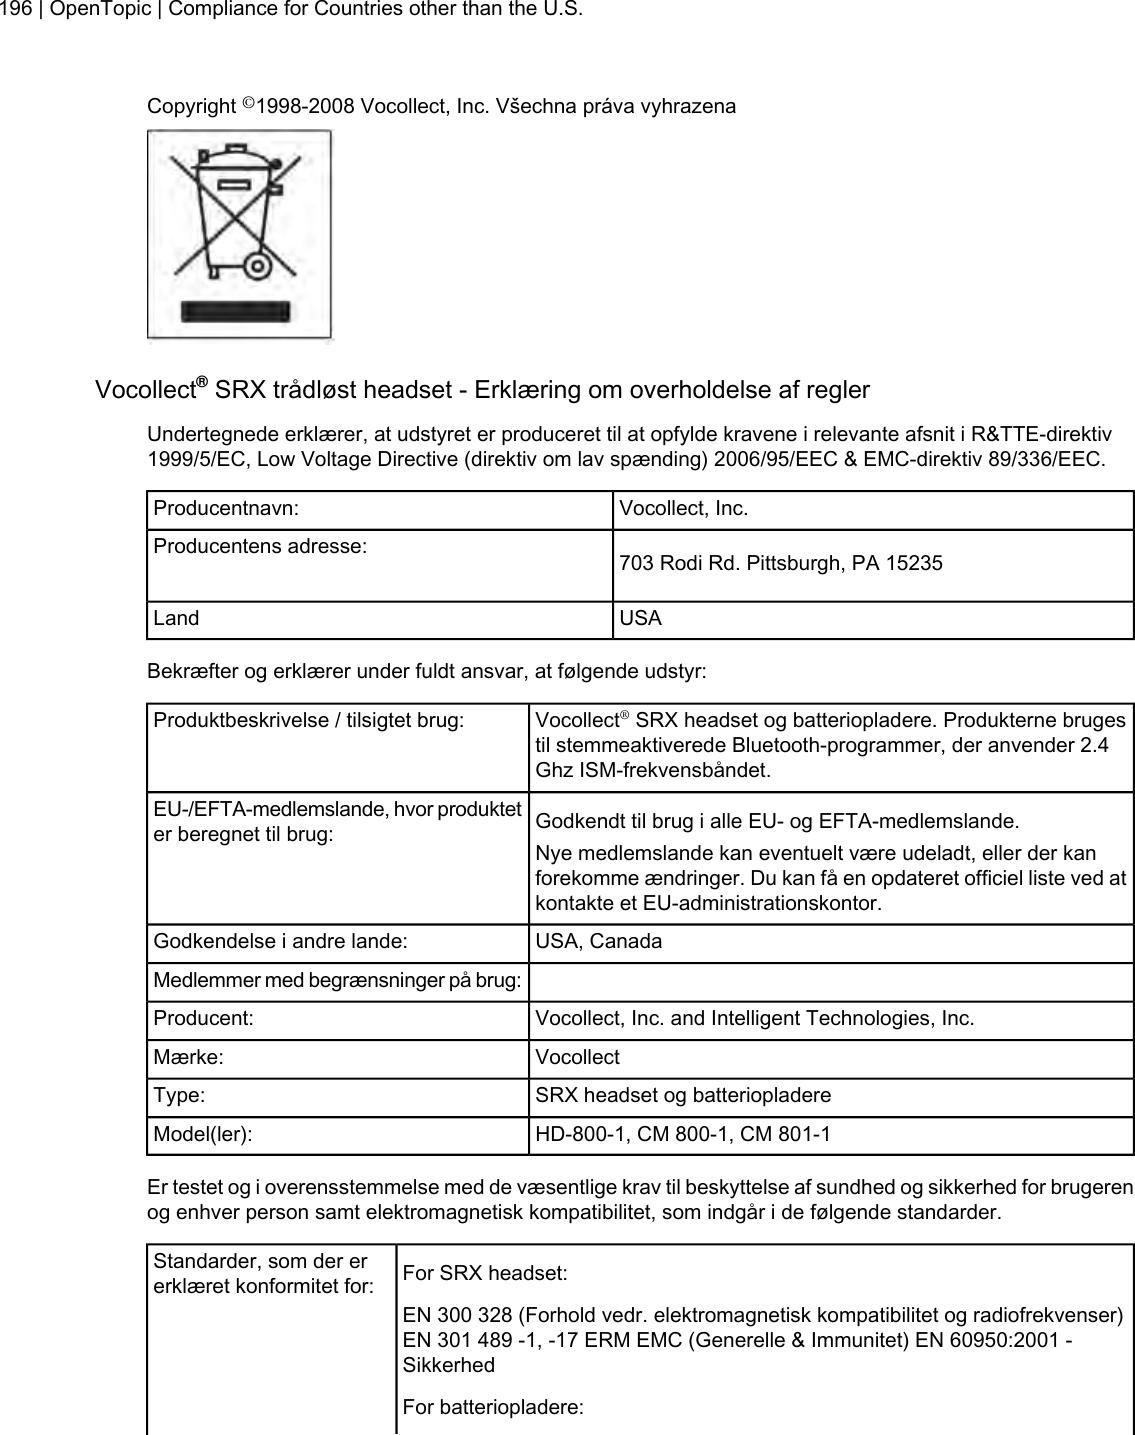 Copyright ©1998-2008 Vocollect, Inc. Všechna práva vyhrazenaVocollect®SRX trådløst headset - Erklæring om overholdelse af reglerUndertegnede erklærer, at udstyret er produceret til at opfylde kravene i relevante afsnit i R&amp;TTE-direktiv1999/5/EC, Low Voltage Directive (direktiv om lav spænding) 2006/95/EEC &amp; EMC-direktiv 89/336/EEC.Vocollect, Inc.Producentnavn:703 Rodi Rd. Pittsburgh, PA 15235Producentens adresse:USALandBekræfter og erklærer under fuldt ansvar, at følgende udstyr:Vocollect®SRX headset og batteriopladere. Produkterne brugestil stemmeaktiverede Bluetooth-programmer, der anvender 2.4Ghz ISM-frekvensbåndet.Produktbeskrivelse / tilsigtet brug:Godkendt til brug i alle EU- og EFTA-medlemslande.EU-/EFTA-medlemslande, hvor produkteter beregnet til brug: Nye medlemslande kan eventuelt være udeladt, eller der kanforekomme ændringer. Du kan få en opdateret officiel liste ved atkontakte et EU-administrationskontor.USA, CanadaGodkendelse i andre lande:Medlemmer med begrænsninger på brug:Vocollect, Inc. and Intelligent Technologies, Inc.Producent:VocollectMærke:SRX headset og batteriopladereType:HD-800-1, CM 800-1, CM 801-1Model(ler):Er testet og i overensstemmelse med de væsentlige krav til beskyttelse af sundhed og sikkerhed for brugerenog enhver person samt elektromagnetisk kompatibilitet, som indgår i de følgende standarder.For SRX headset:Standarder, som der ererklæret konformitet for:EN 300 328 (Forhold vedr. elektromagnetisk kompatibilitet og radiofrekvenser)EN 301 489 -1, -17 ERM EMC (Generelle &amp; Immunitet) EN 60950:2001 -SikkerhedFor batteriopladere:196 | OpenTopic | Compliance for Countries other than the U.S.